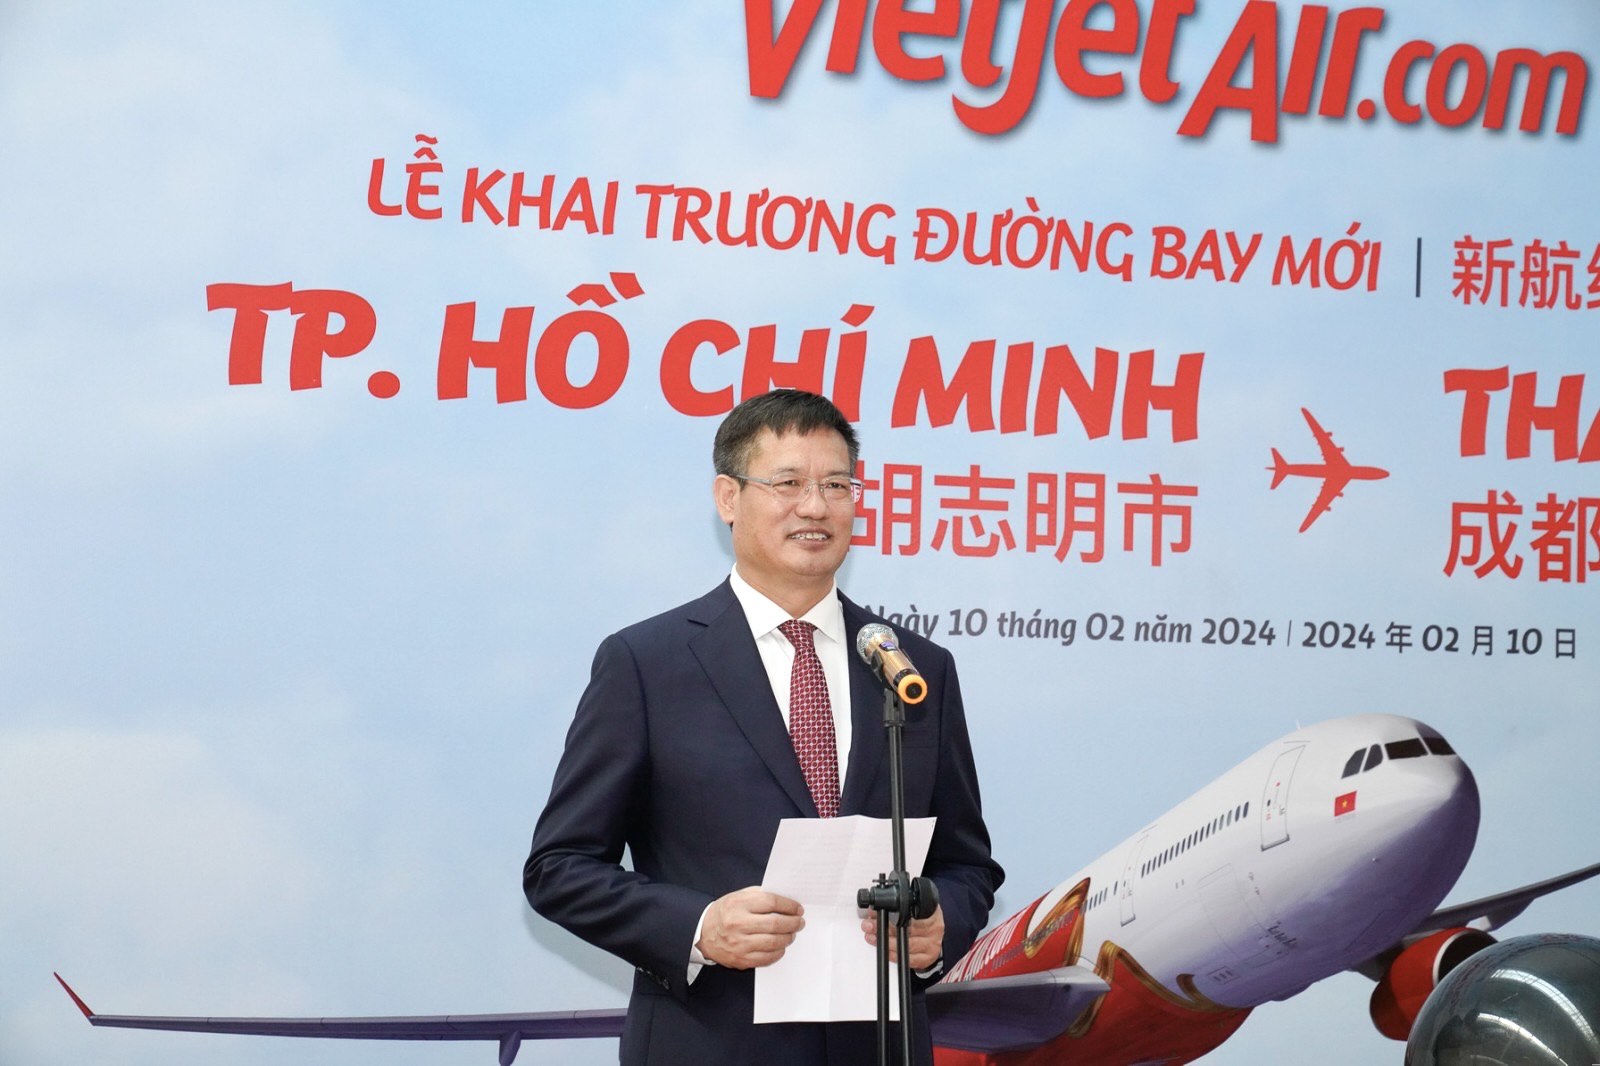 Tổng Lãnh sự Trung Quốc tại TP. Hồ Chí Minh Nguỵ Hoa Tường phát biểu chúc mừng đường bay mới của Vietjet.